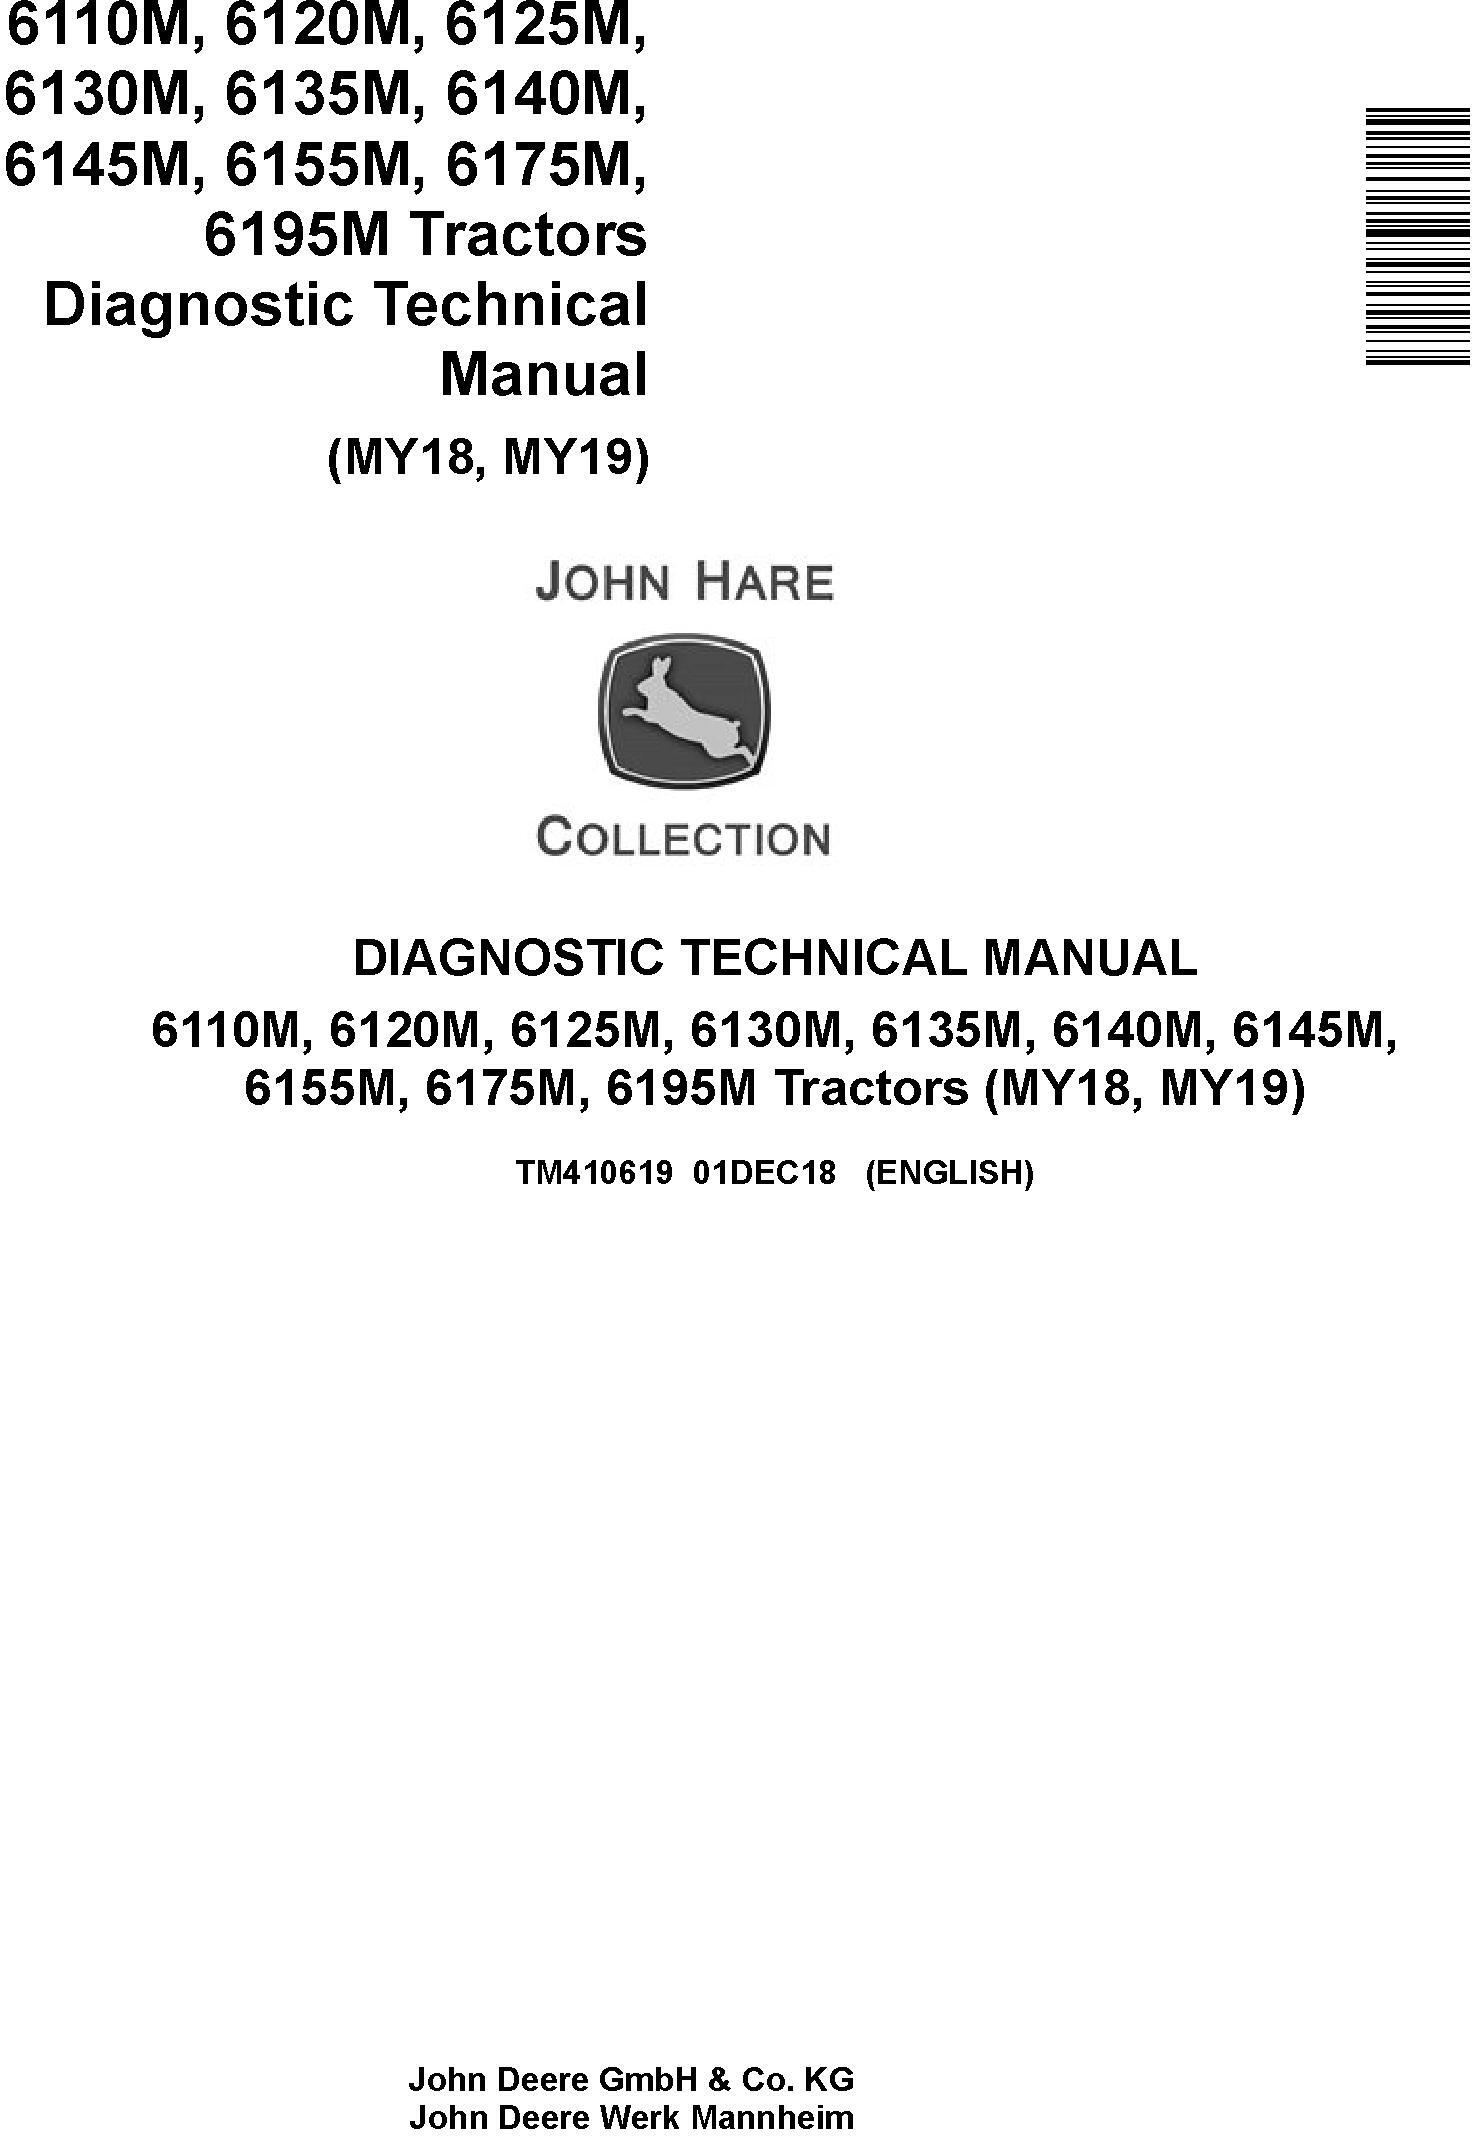 John Deere 6110M/20M 6130M/40M 6125M/35M 6145M/55M 6175M 6195M Tractors Diagnostic Manual (TM410619)